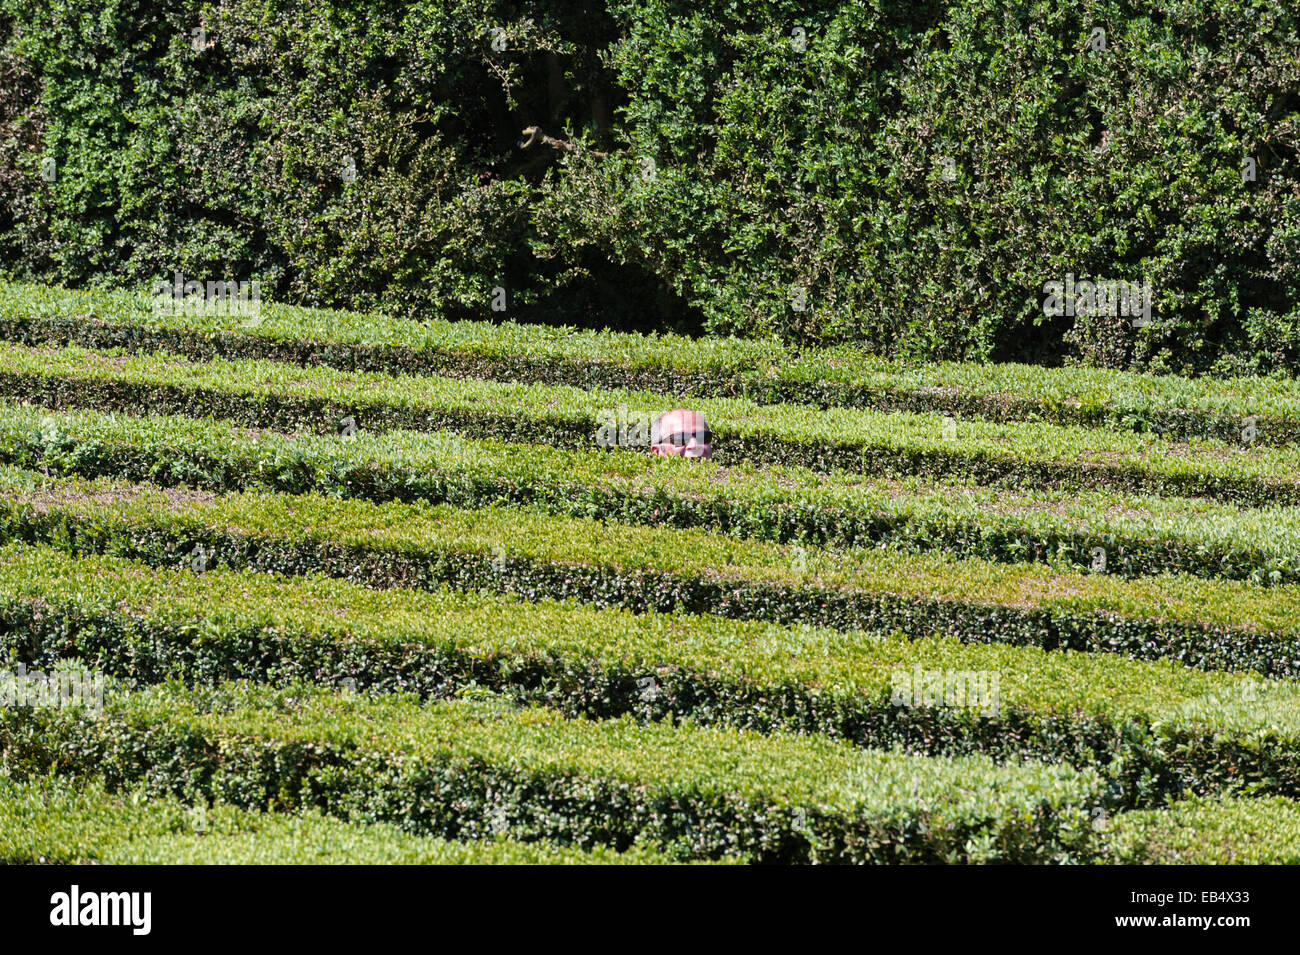 A visitor in the maze in the formal Baroque gardens of Villa Barbarigo Pizzoni Ardemani, Valsanzibio, Italy Stock Photo